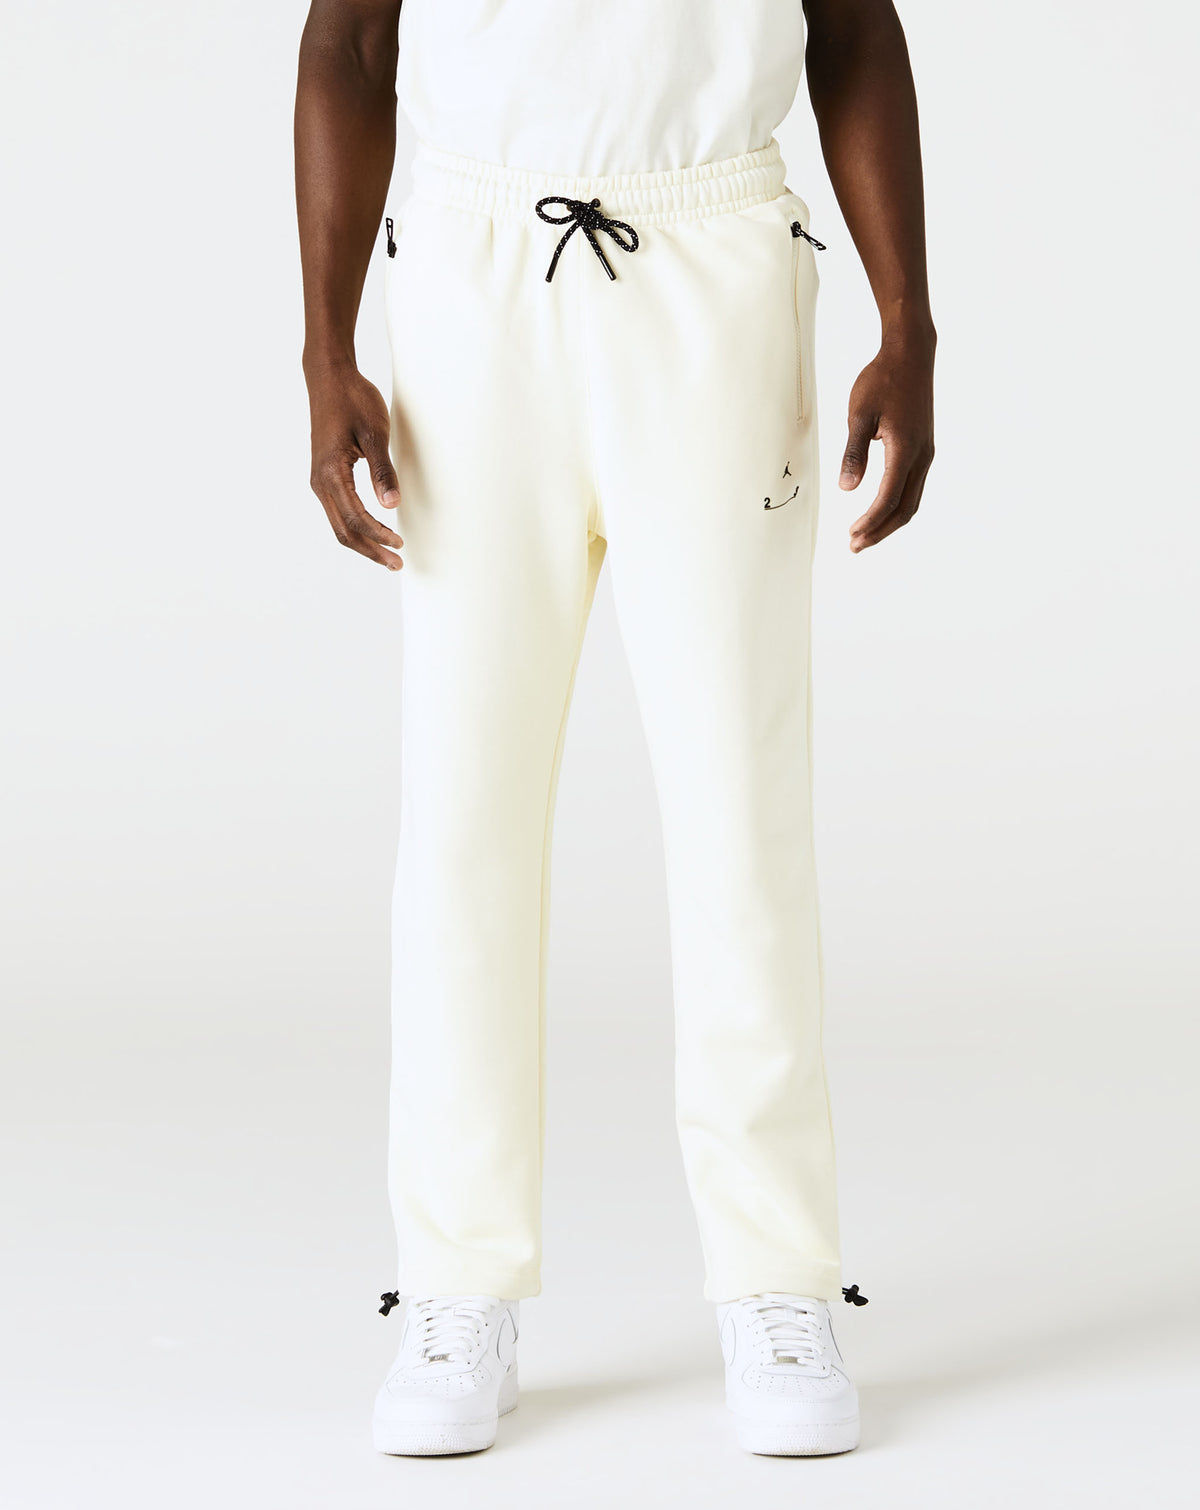 Air Jordan 23 Engineered Fleece Pants - Rule of Next Apparel